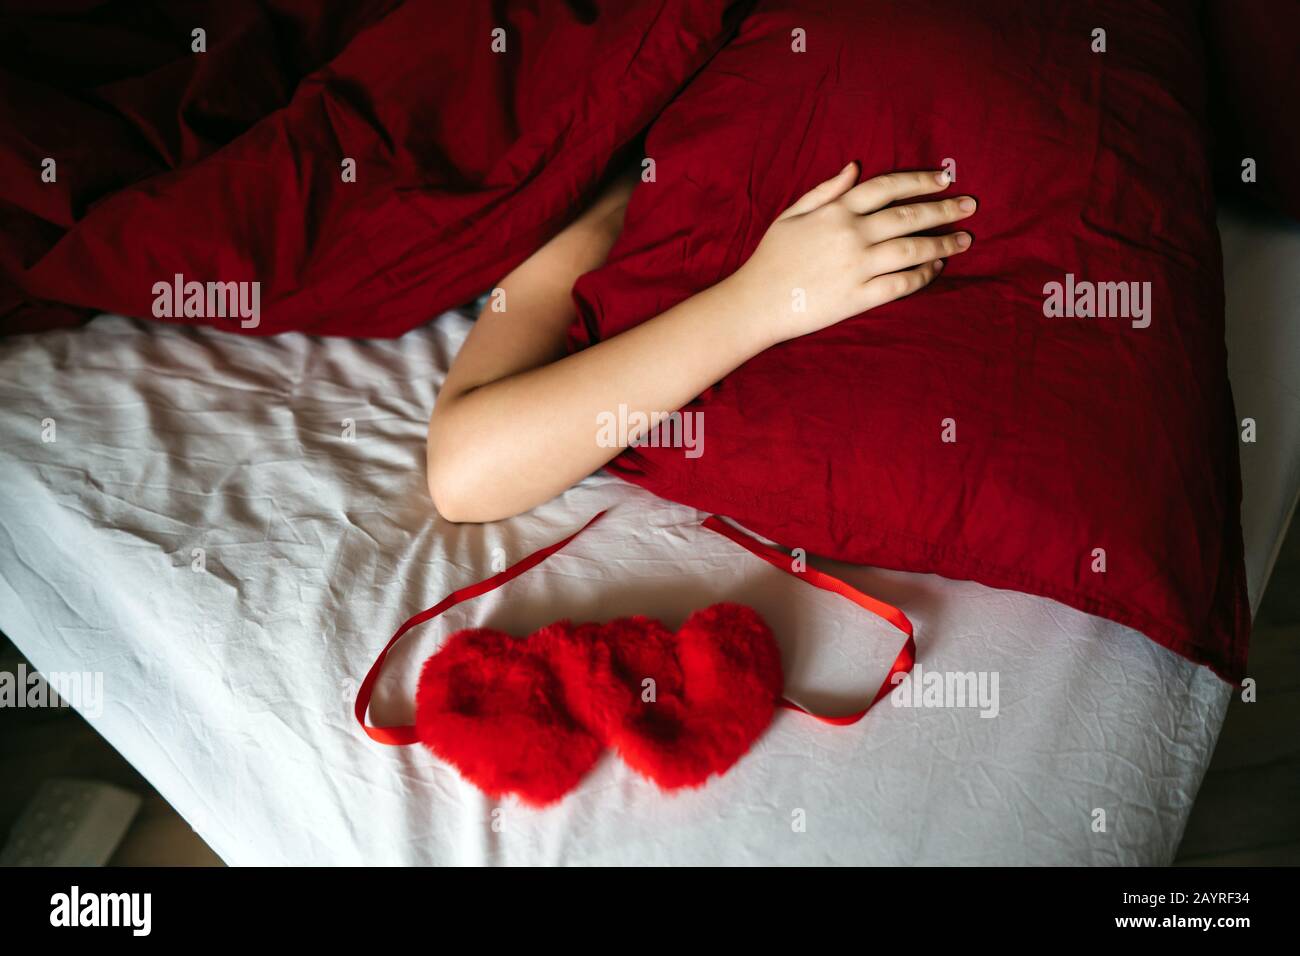 Weibliche Hand, die auf einem roten Kissen liegt, das mit einer Decke bedeckt ist. Stockfoto